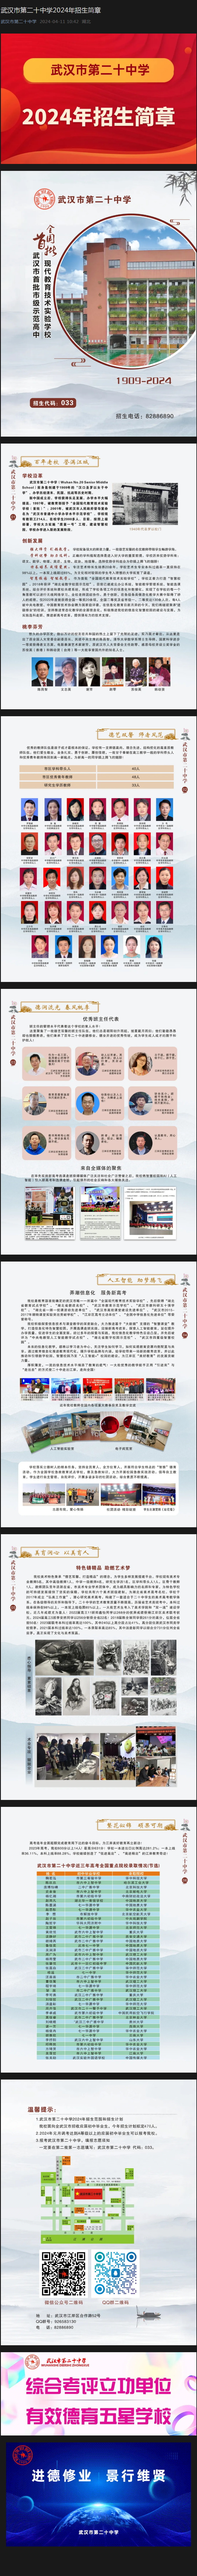 武汉市第二十中学2024年招生简章.jpg